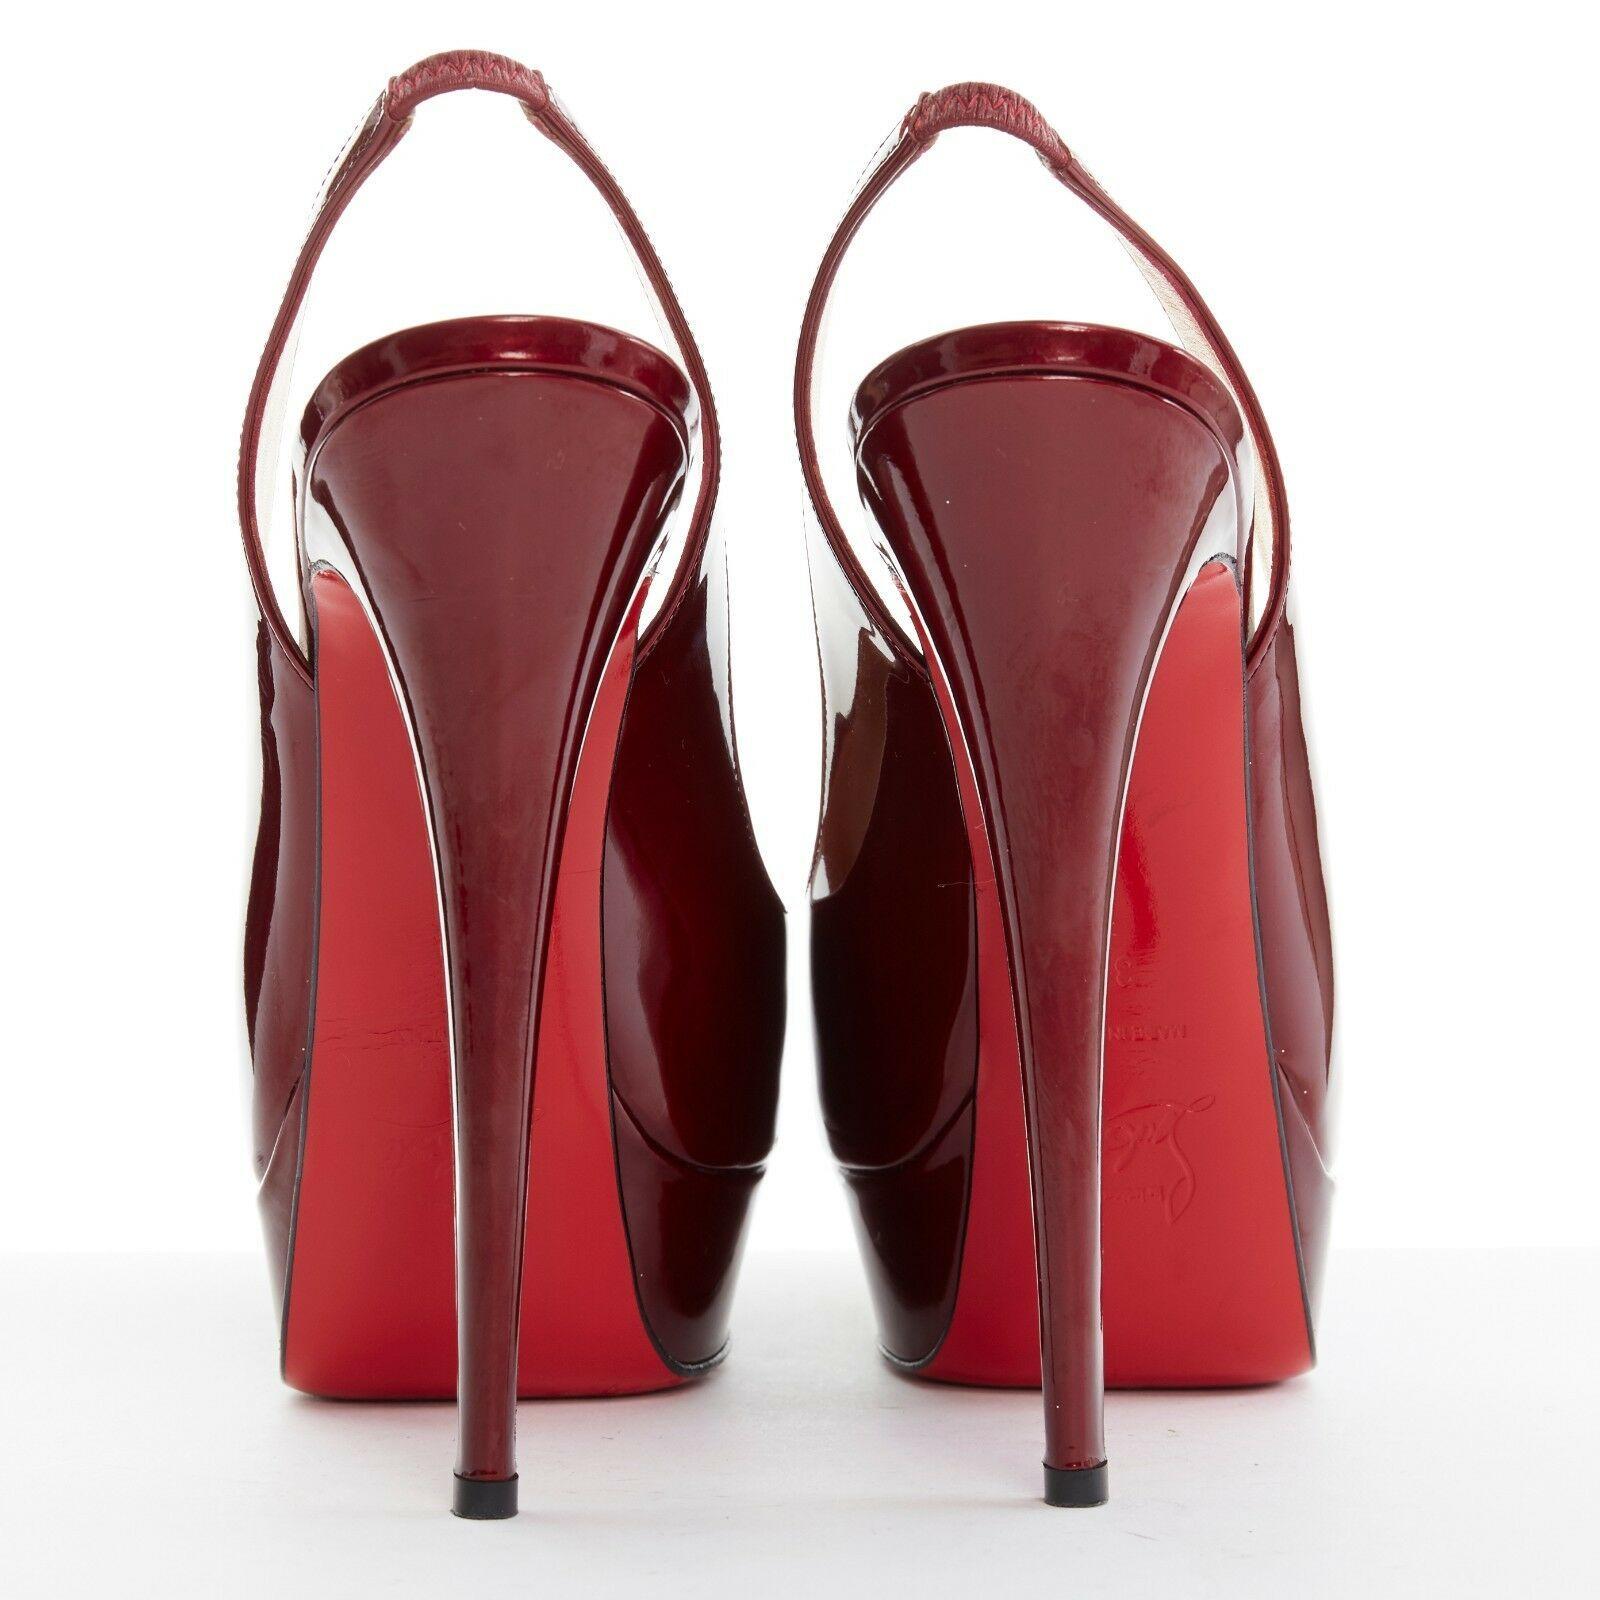 dark red platform heels